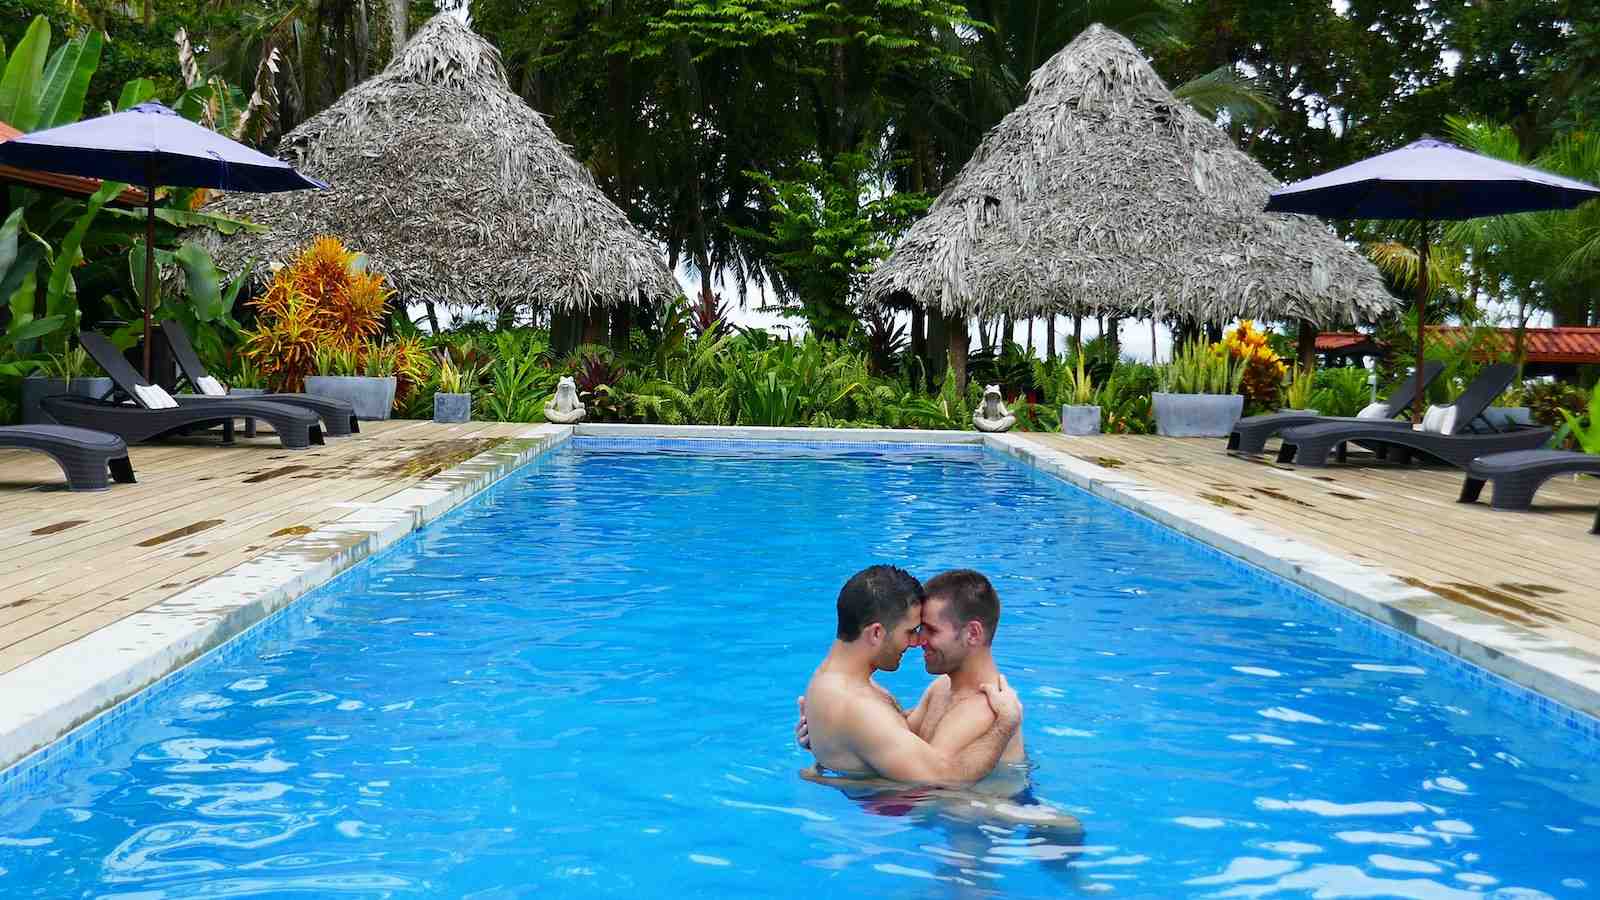 Adoramos a atmosfera romântica apenas para adultos e gay friendly no resort Island Plantation em Bocas del Toro